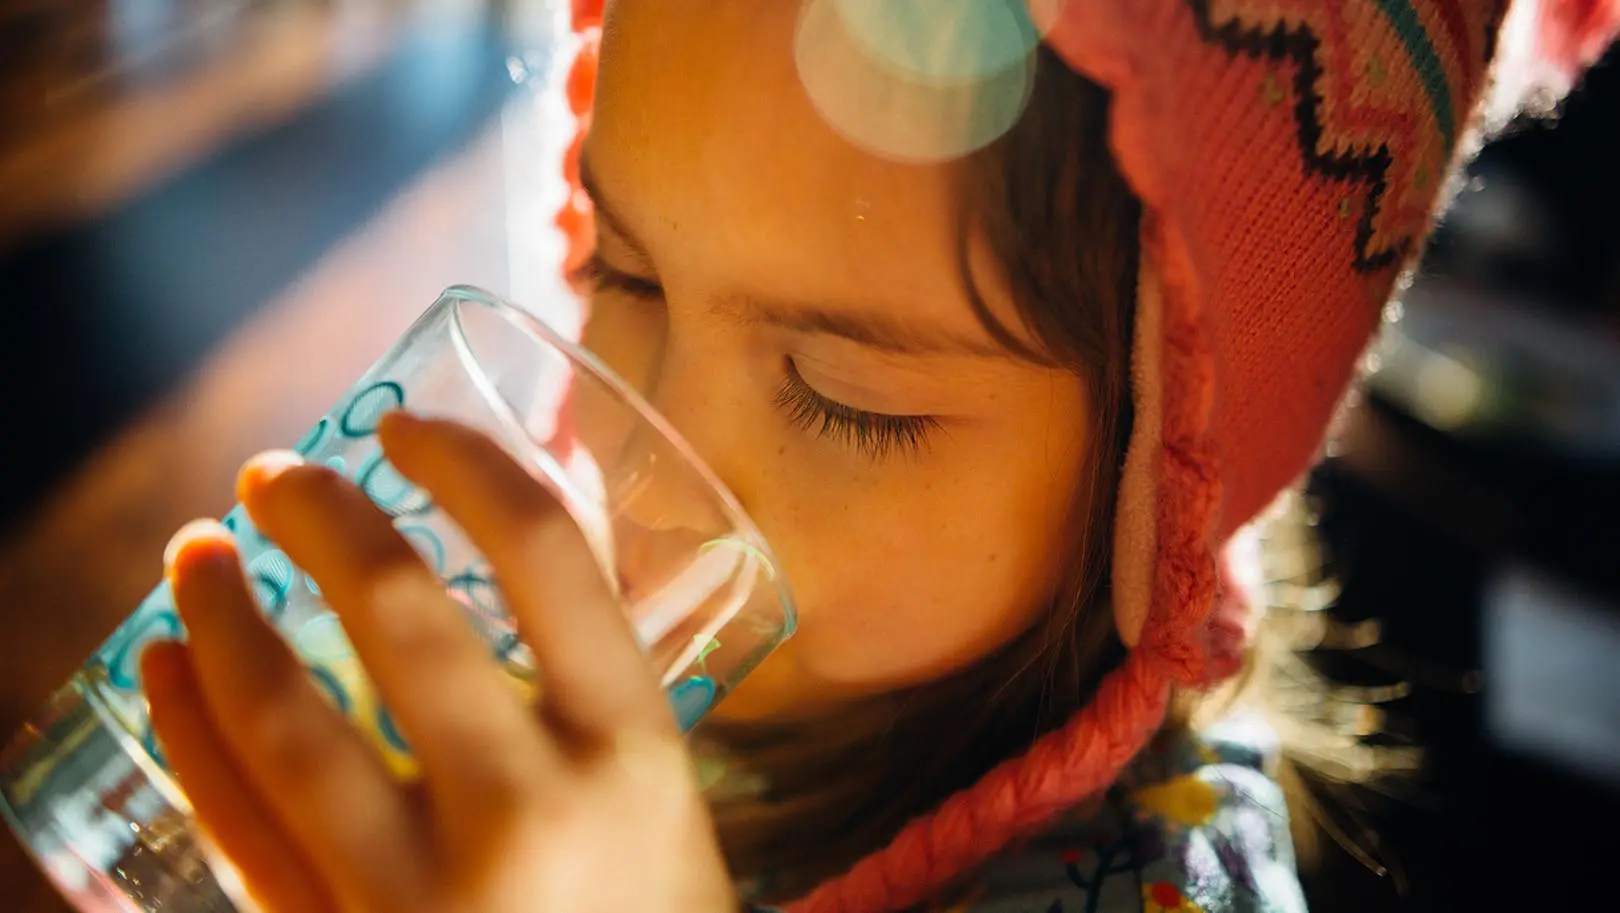 child drinking water